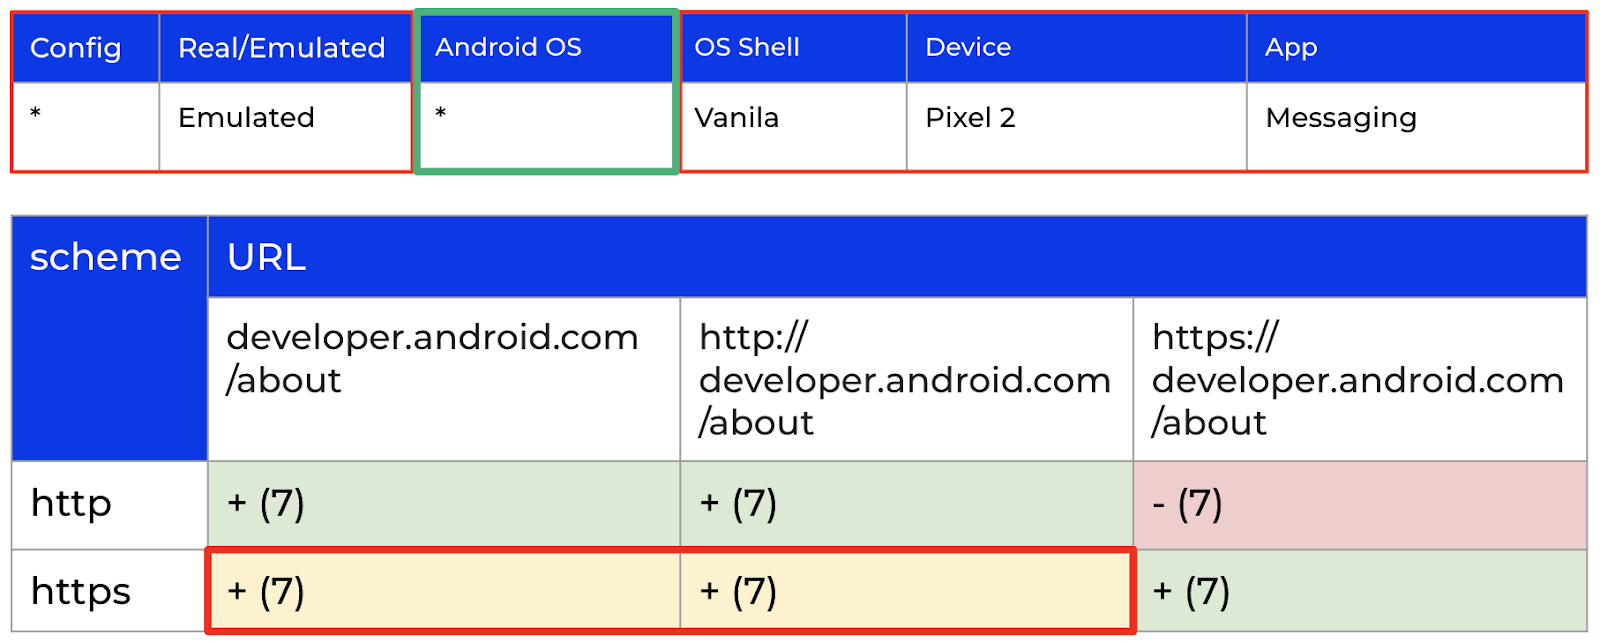 Результаты проверки гипотезы о влиянии версии Android ОС.
